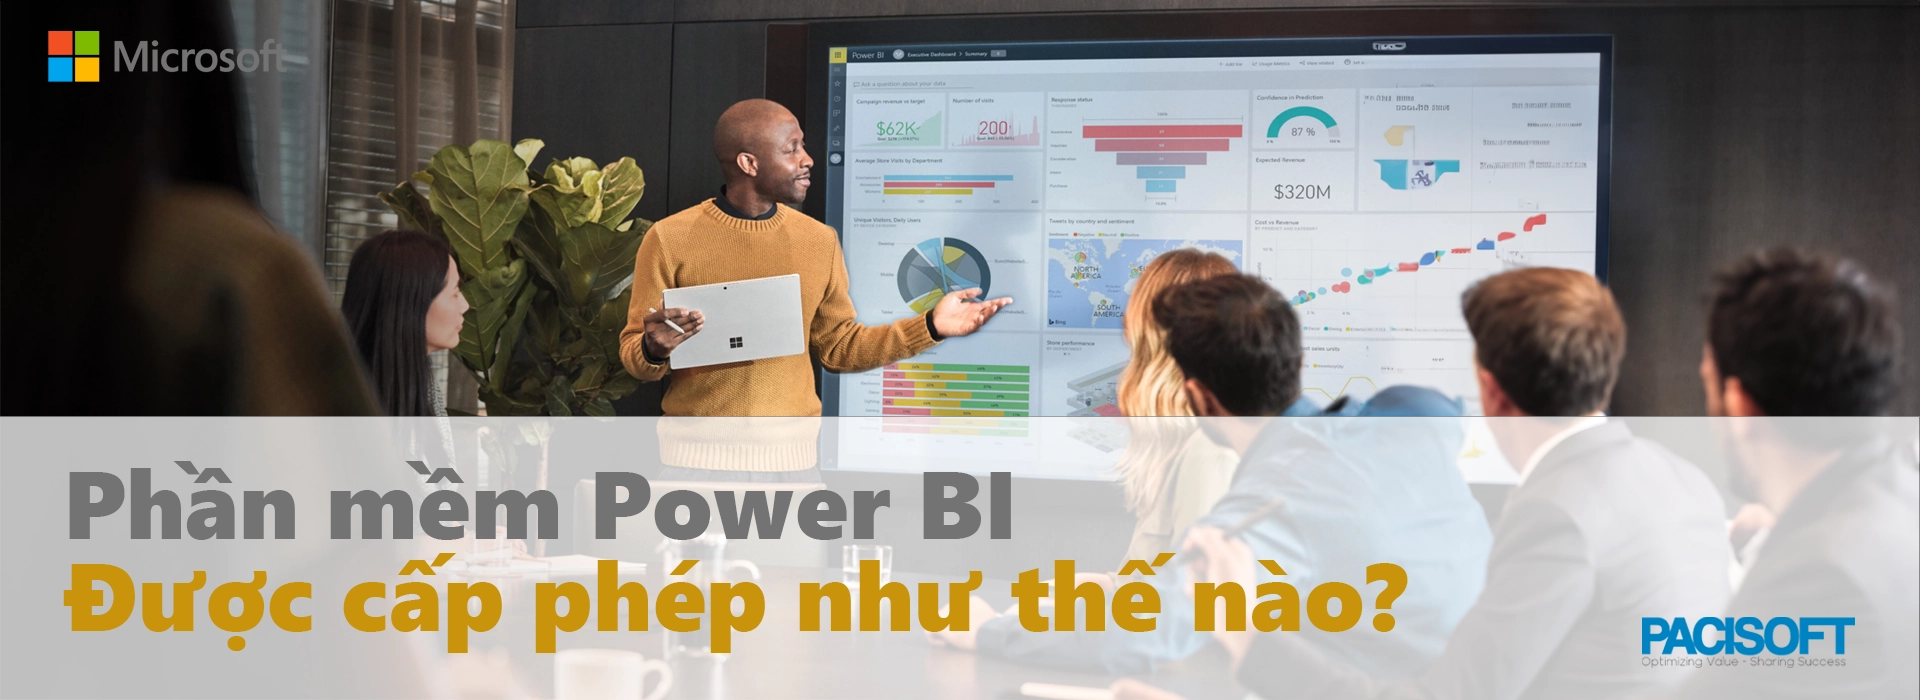 Hướng dẫn cấp phép phần mềm Power BI cho doanh nghiệp của bạn